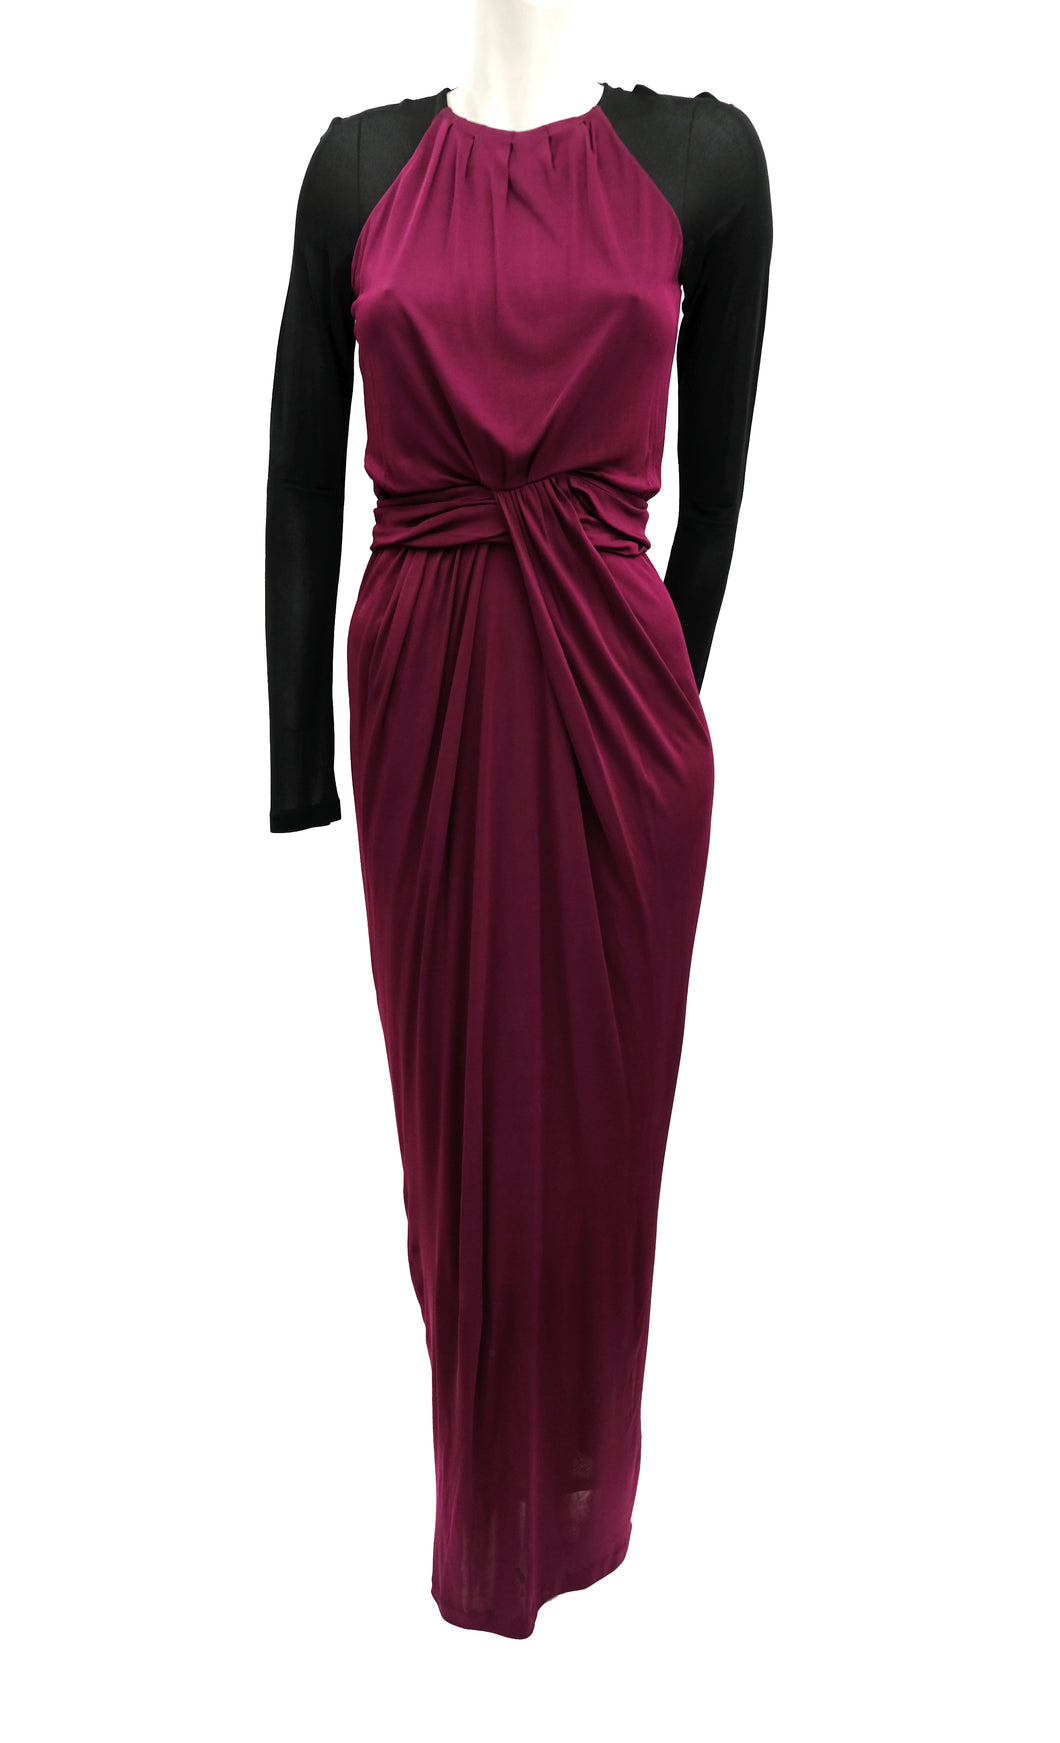 hugo boss burgundy dress